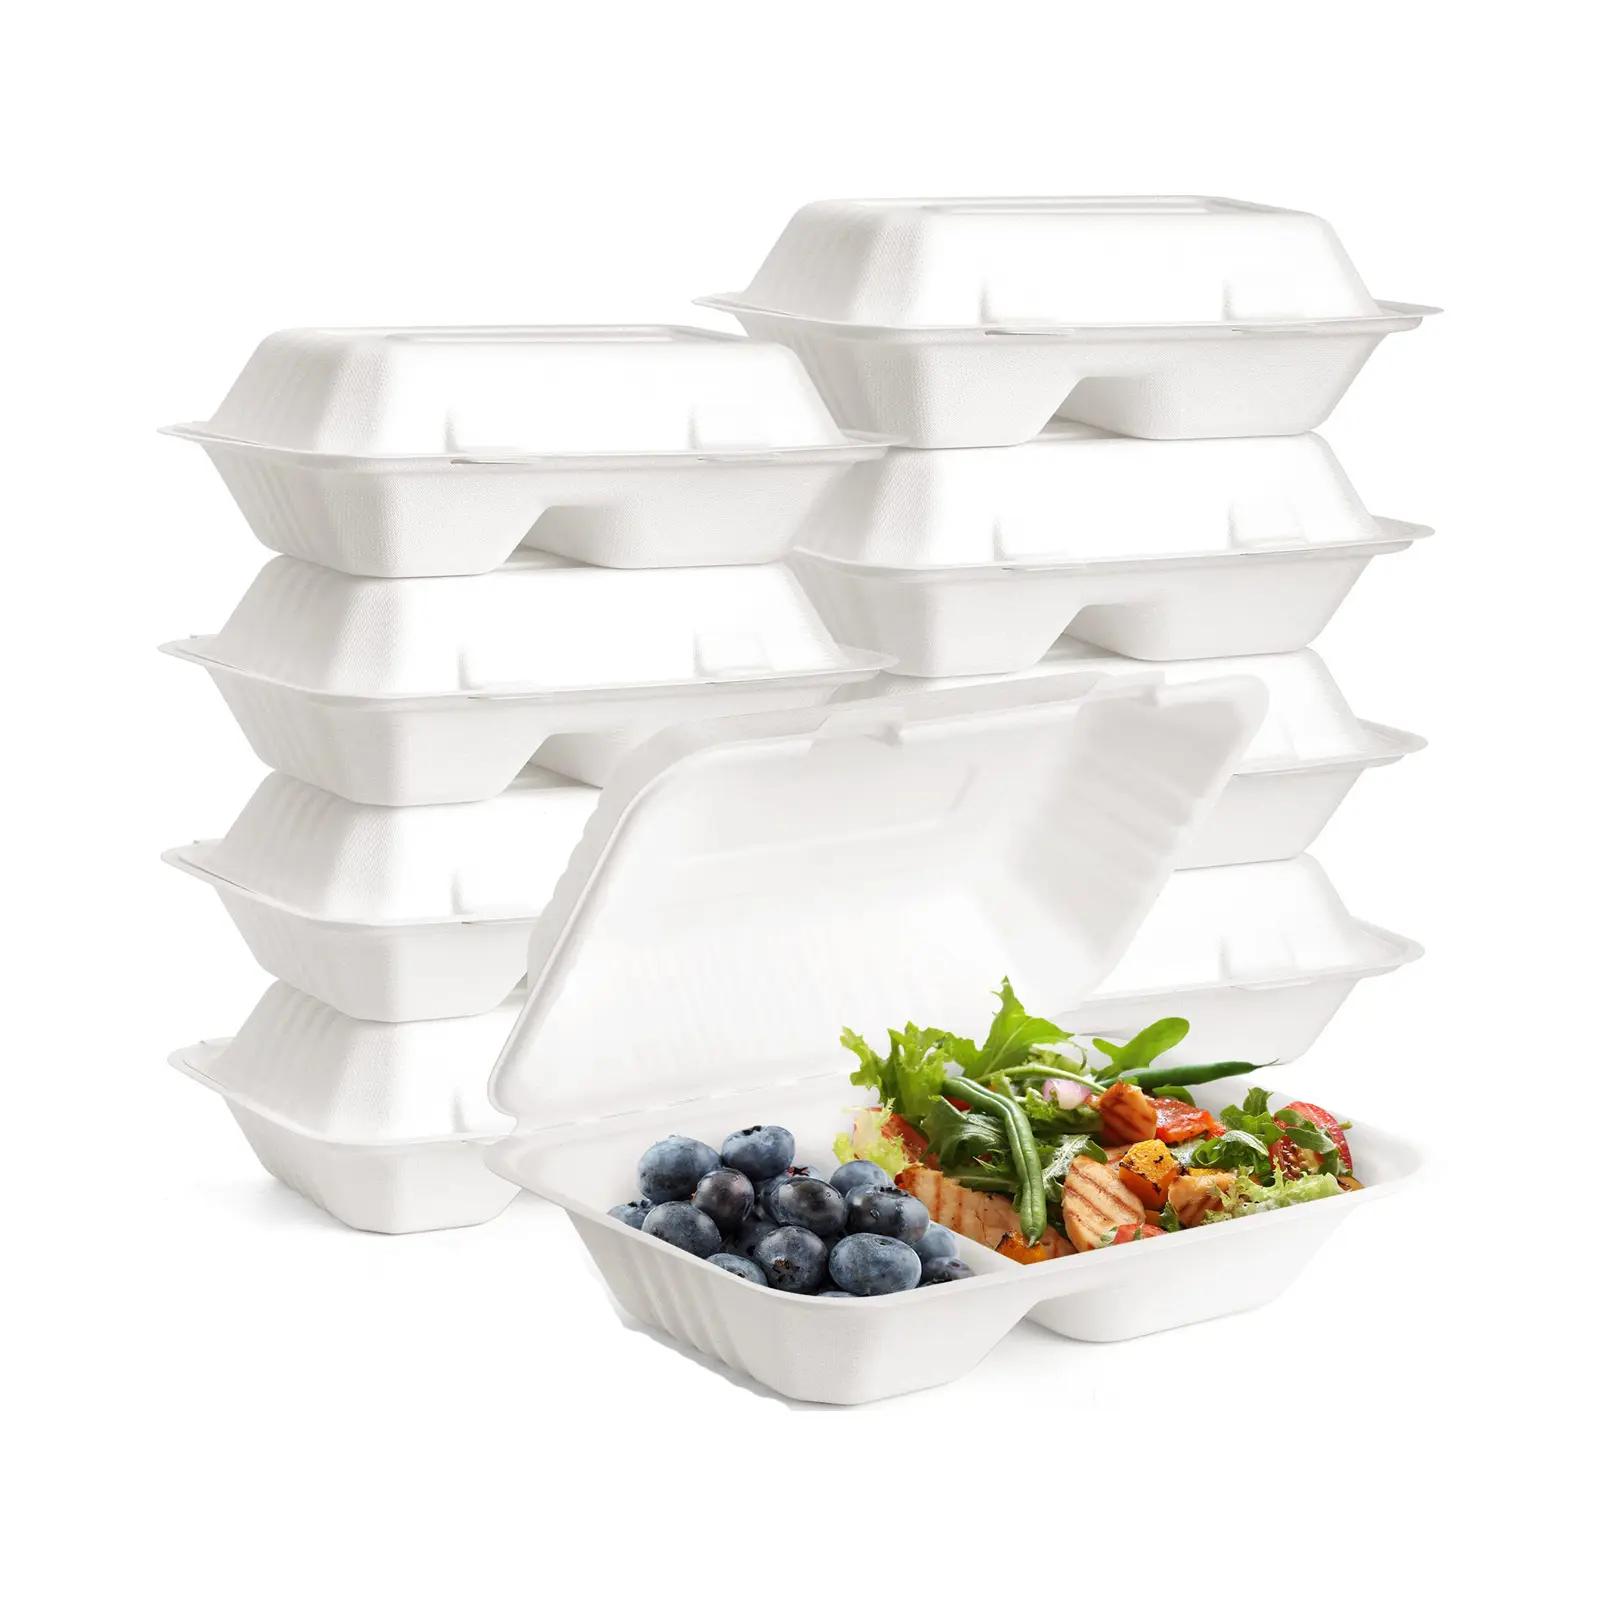 दो डिब्बों के साथ खाद्य कंटेनर जैव-अपग्रेडेबल प्राकृतिक/सफेद बैगास गन्ना बॉक्स